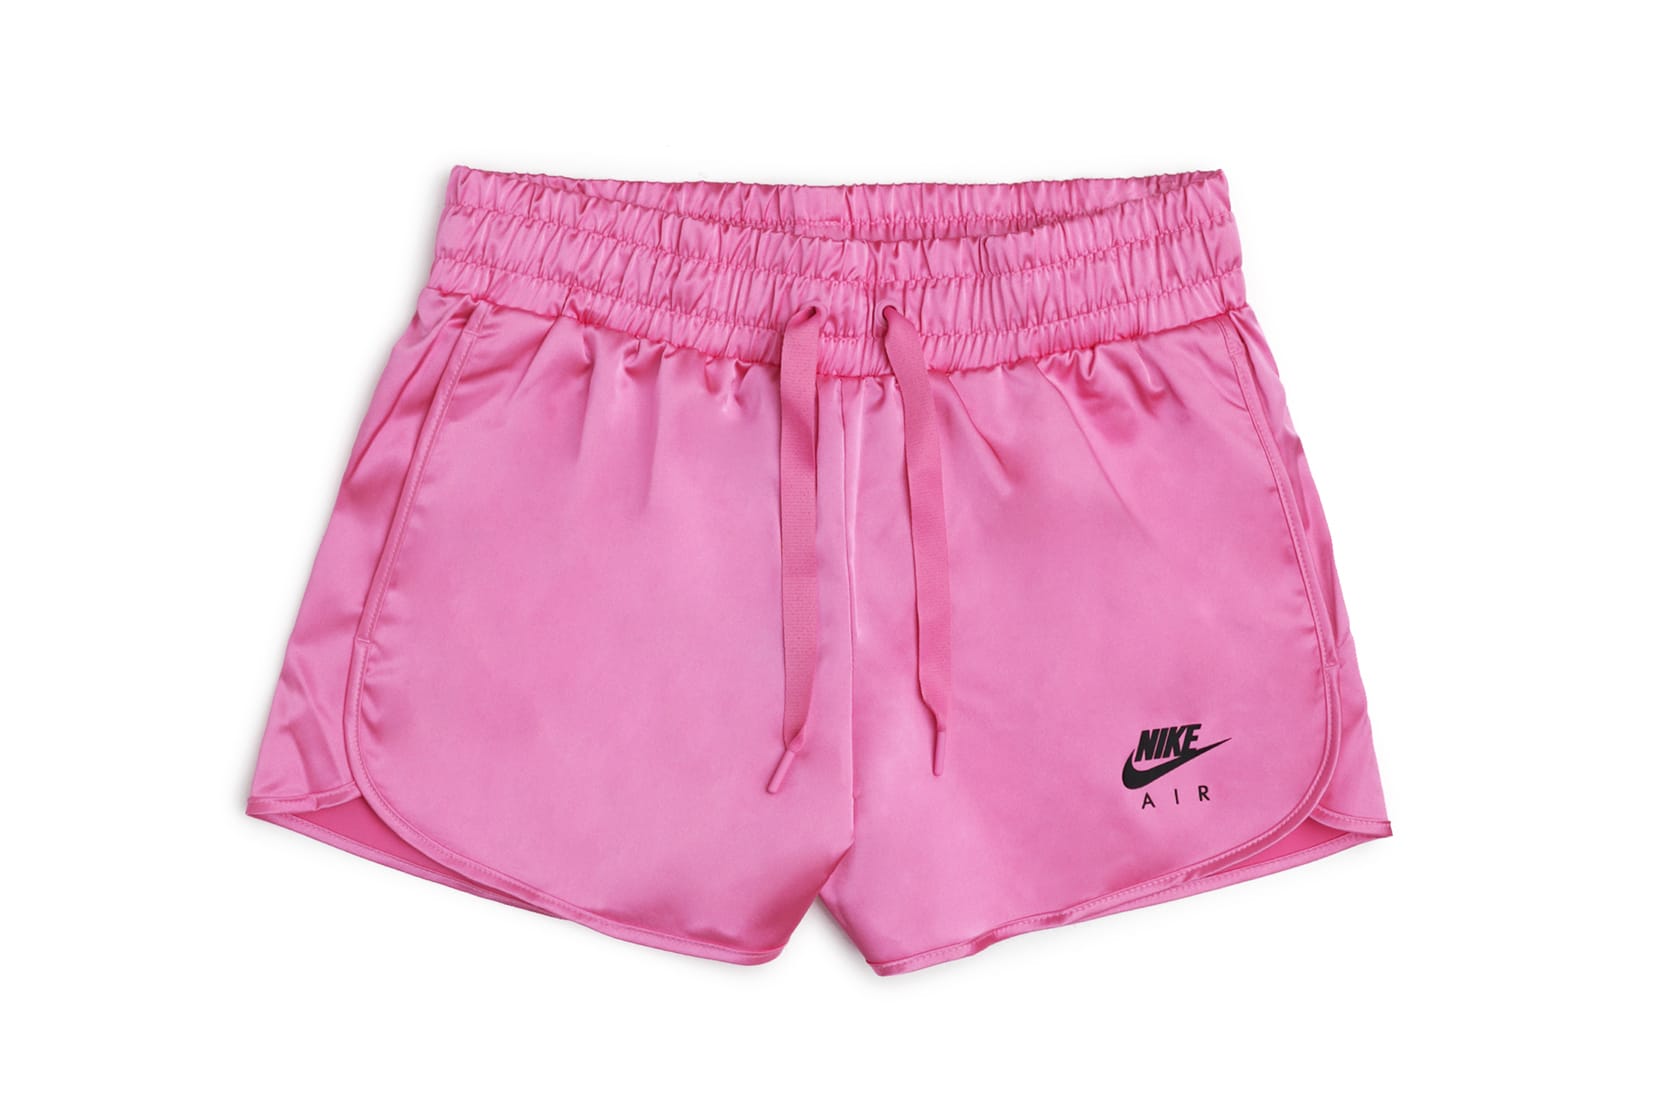 nike air satin shorts echo pink